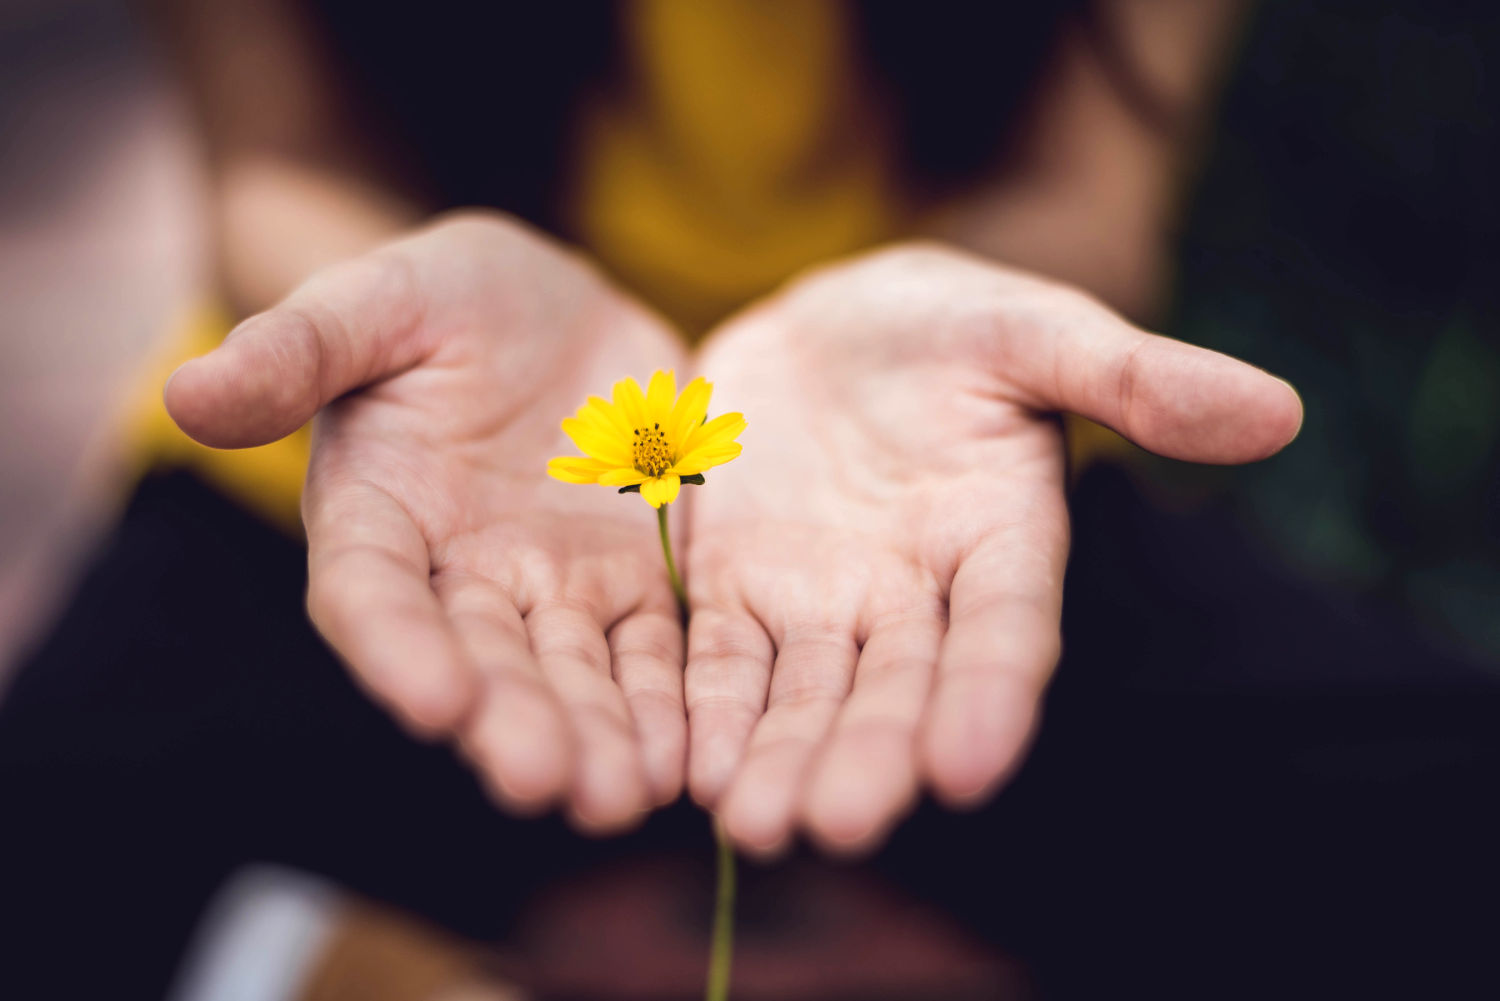 Main ouverte offrant une fleur jaune, signe d'espoir de guérison. Photo de Lina Trochez sur Unsplash.